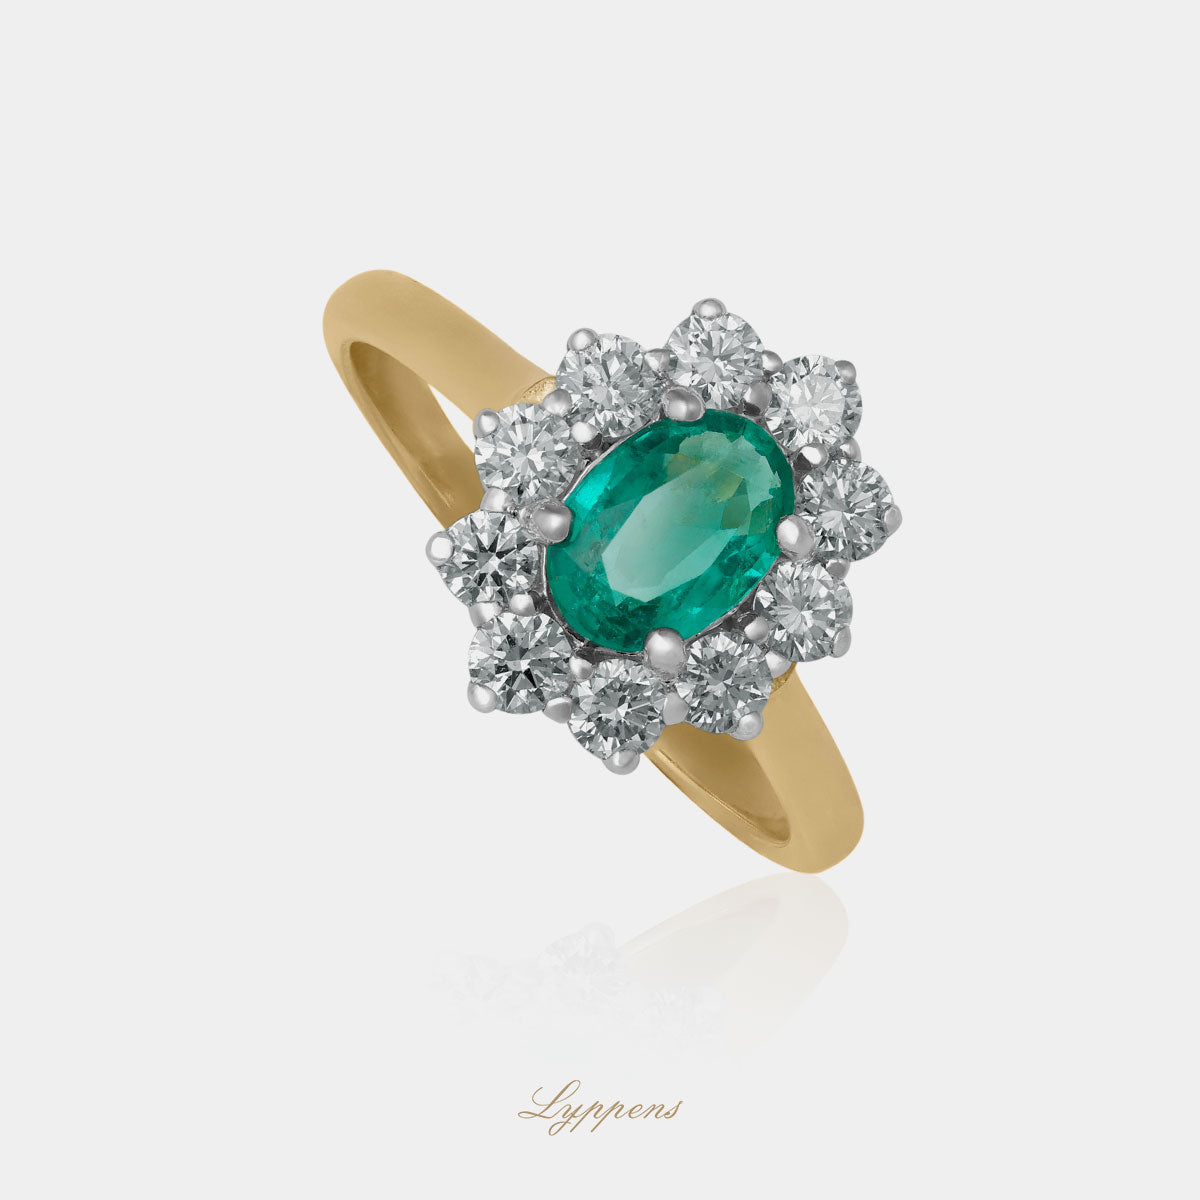 Geel- met witgouden entourage ring in het midden gezet met een ovaal geslepen smaragd in een entourage van briljant geslepen diamant.